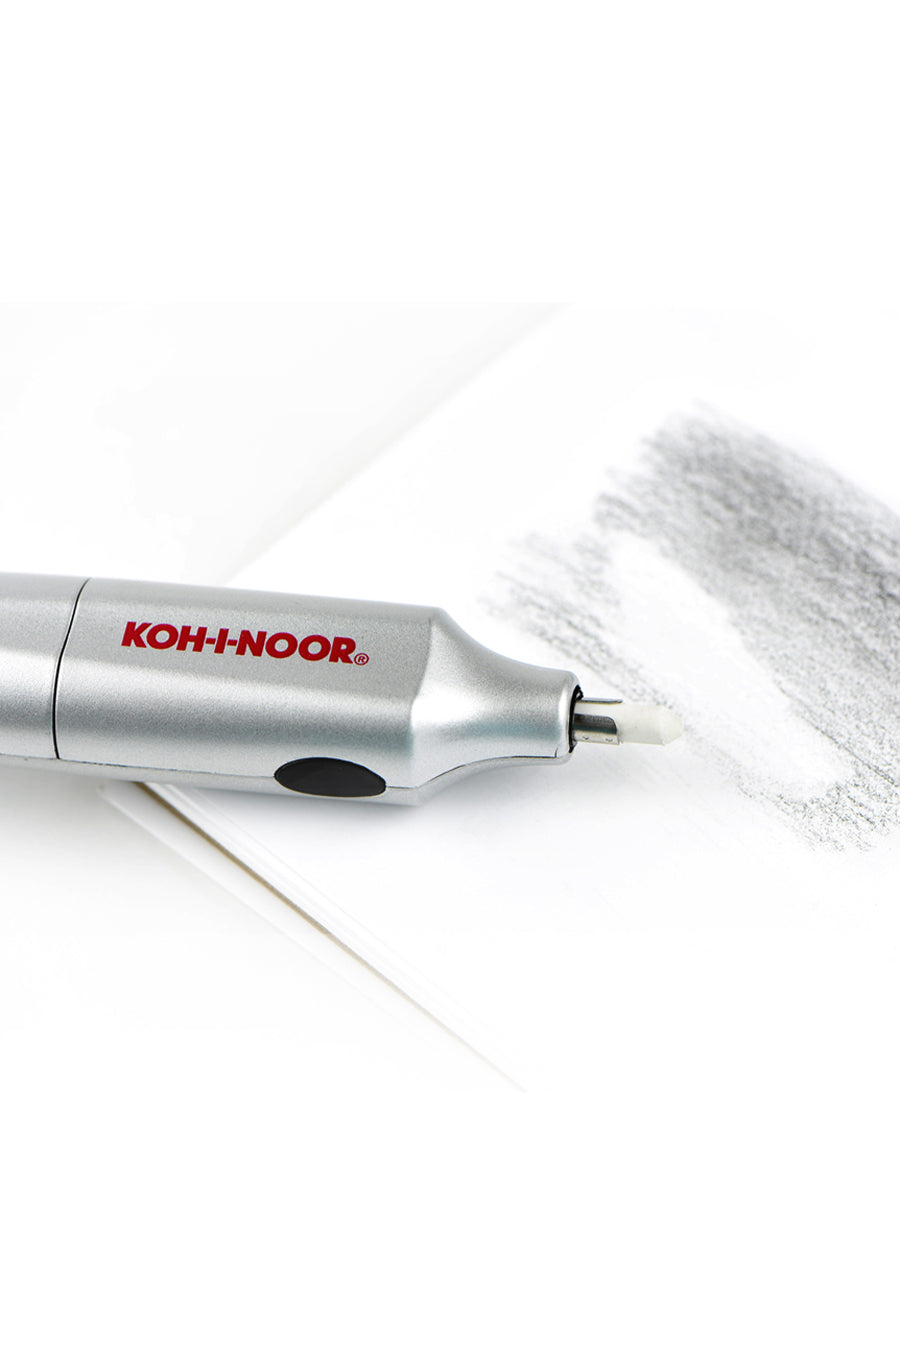 Koh-I-Noor EB-1200 Eraser Refills